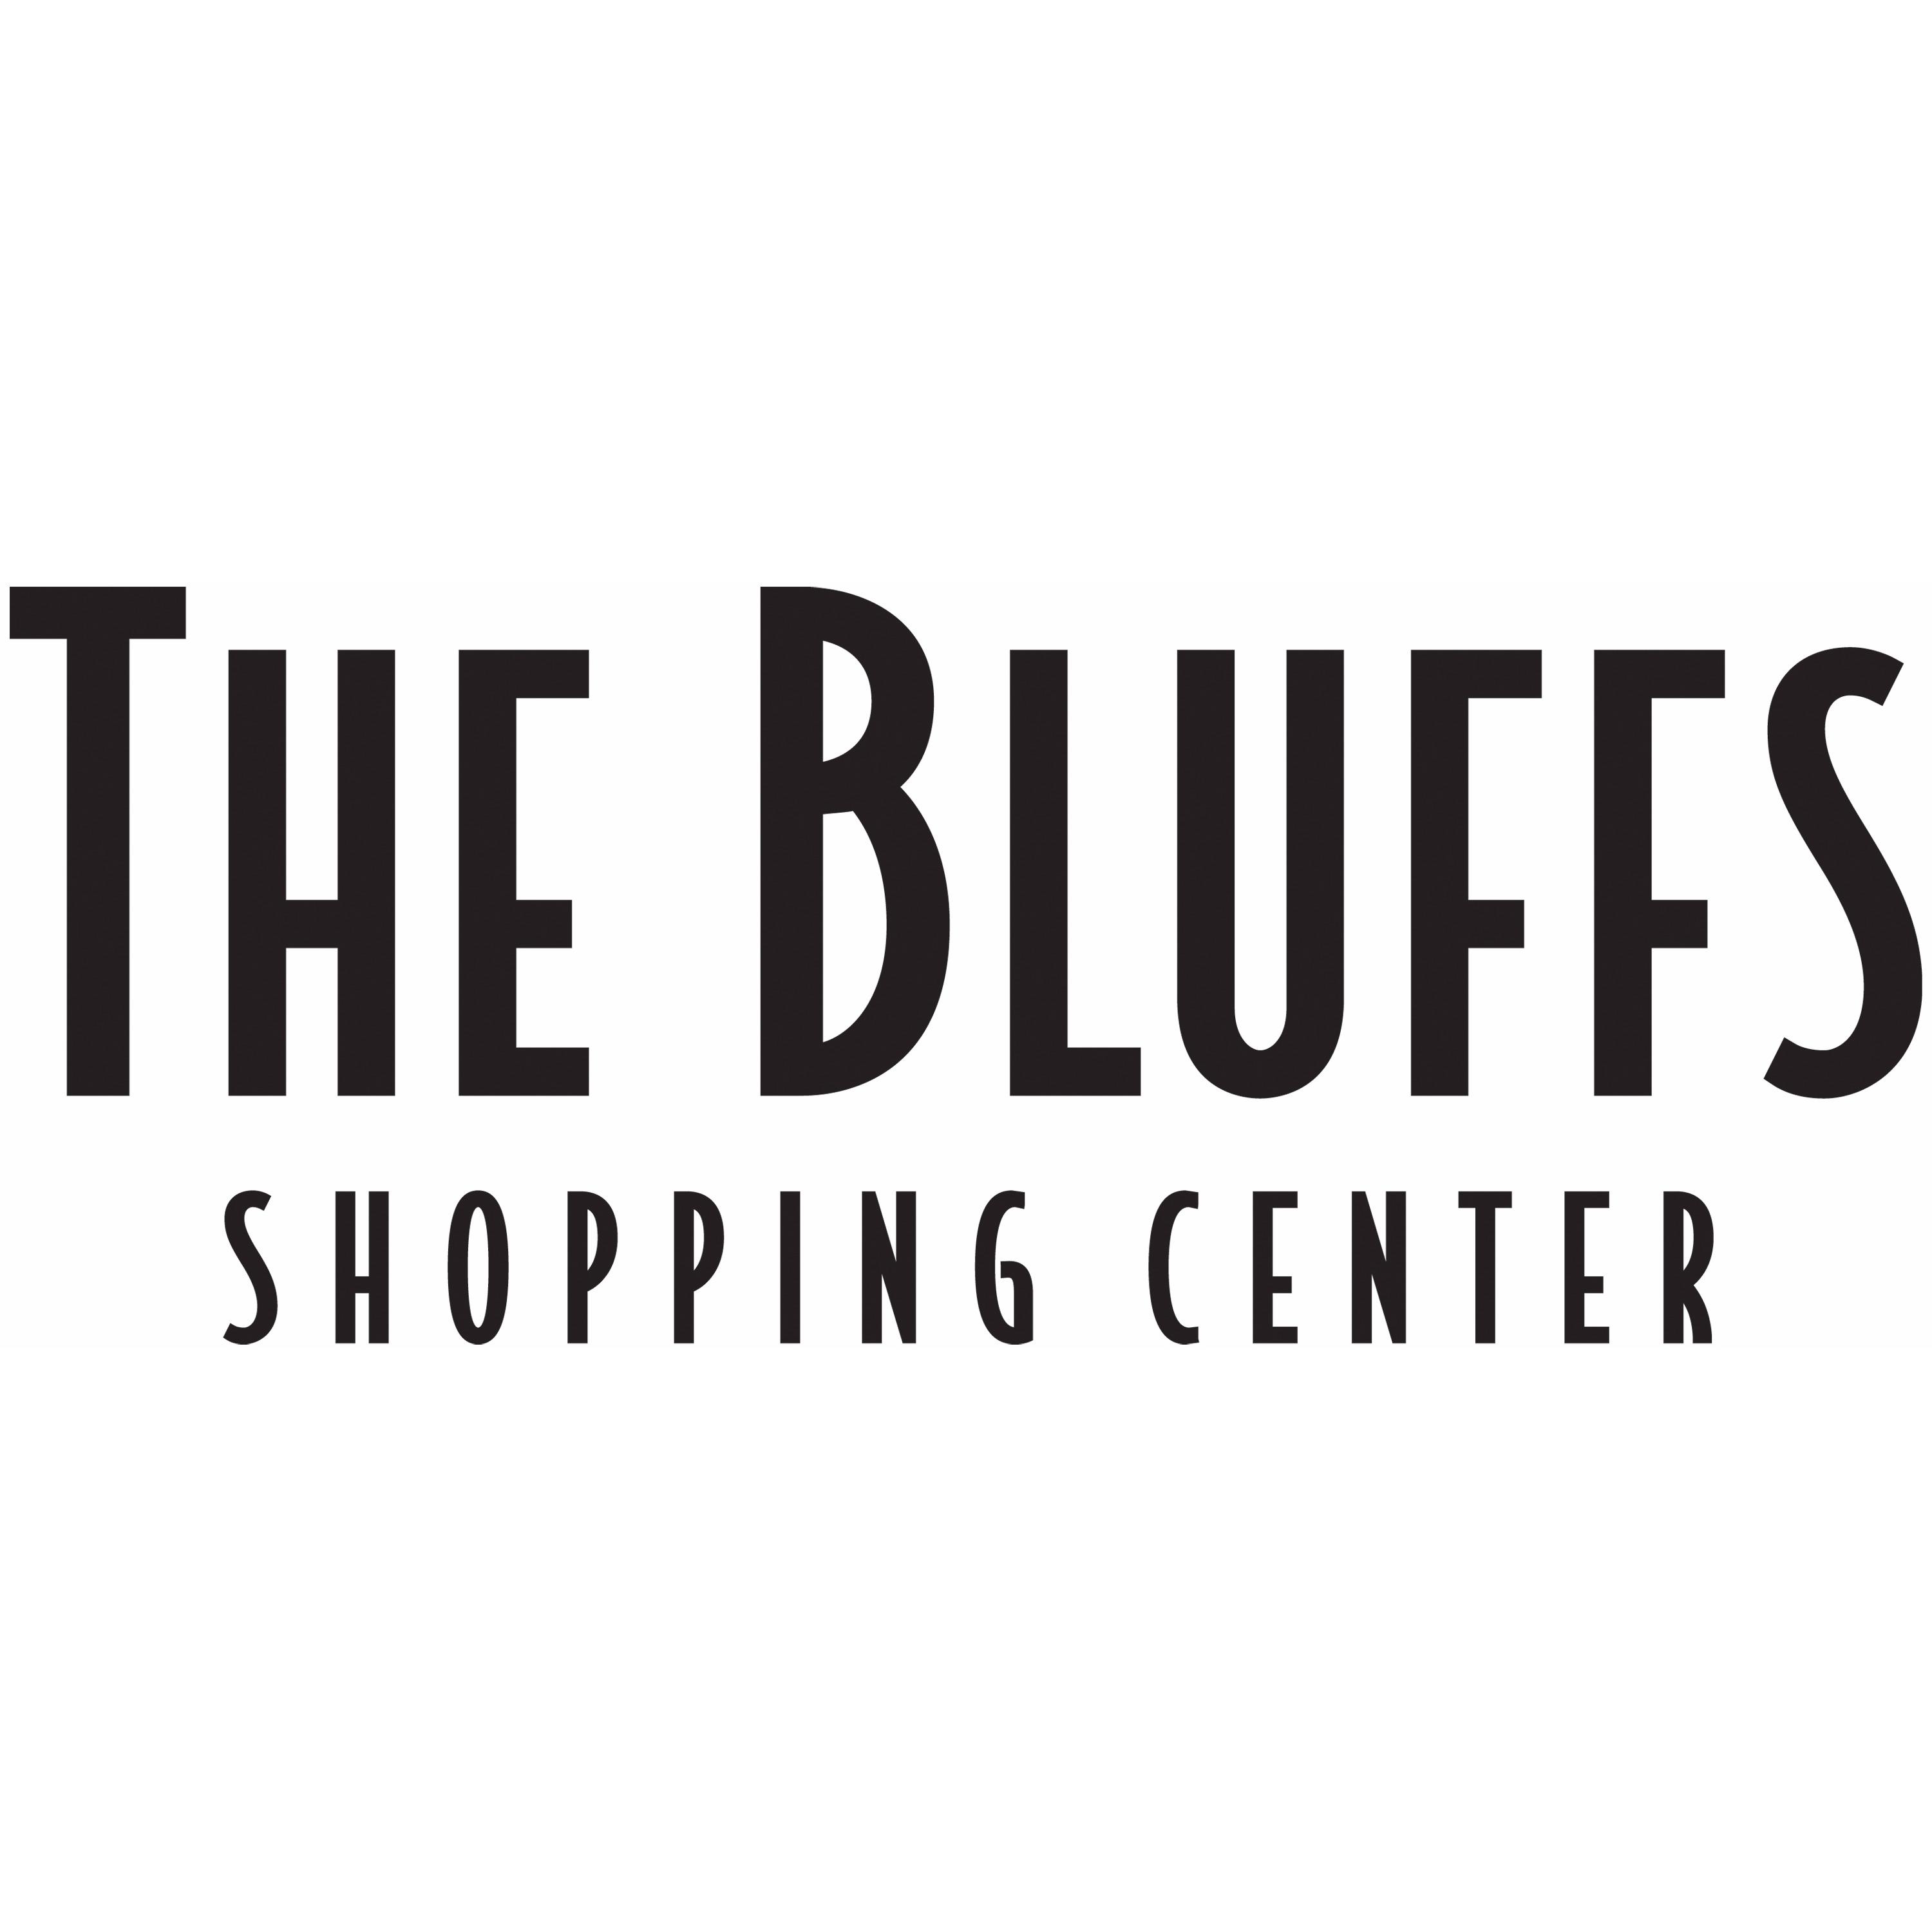 The Bluffs Logo